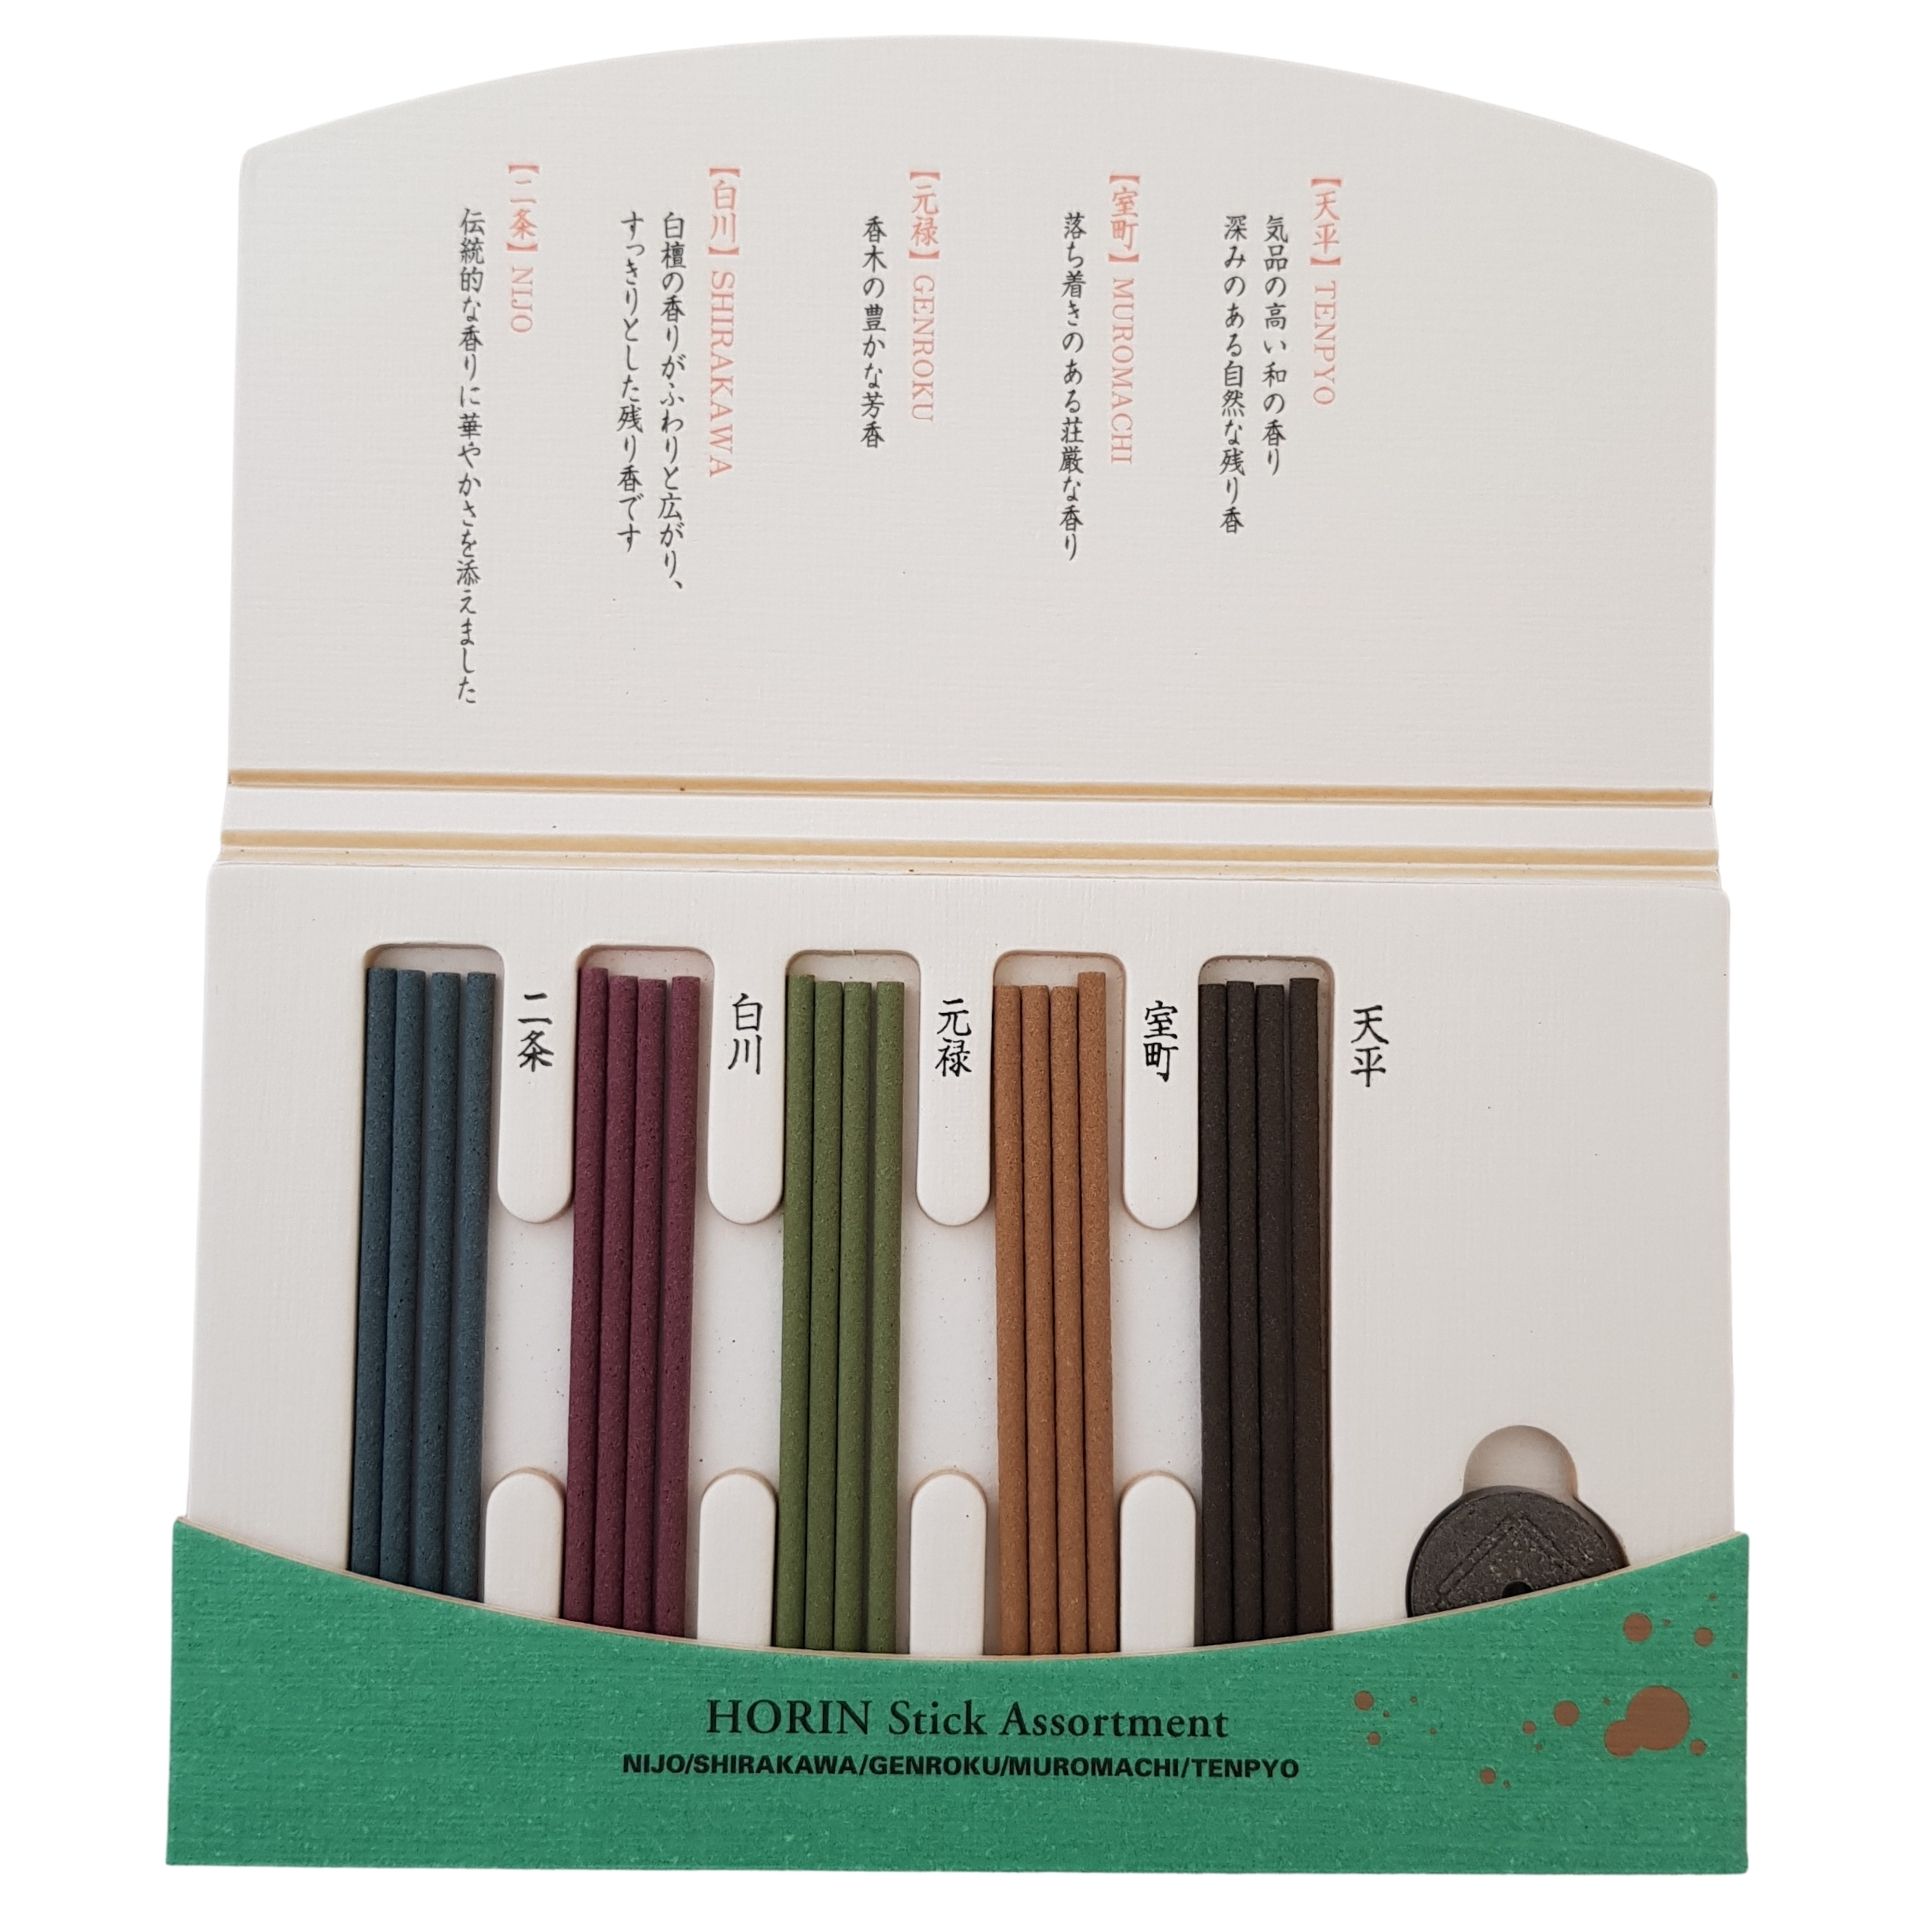 20 Stick Holder Shoyeido Japanese Incense Sticks Horin Range Assortment 